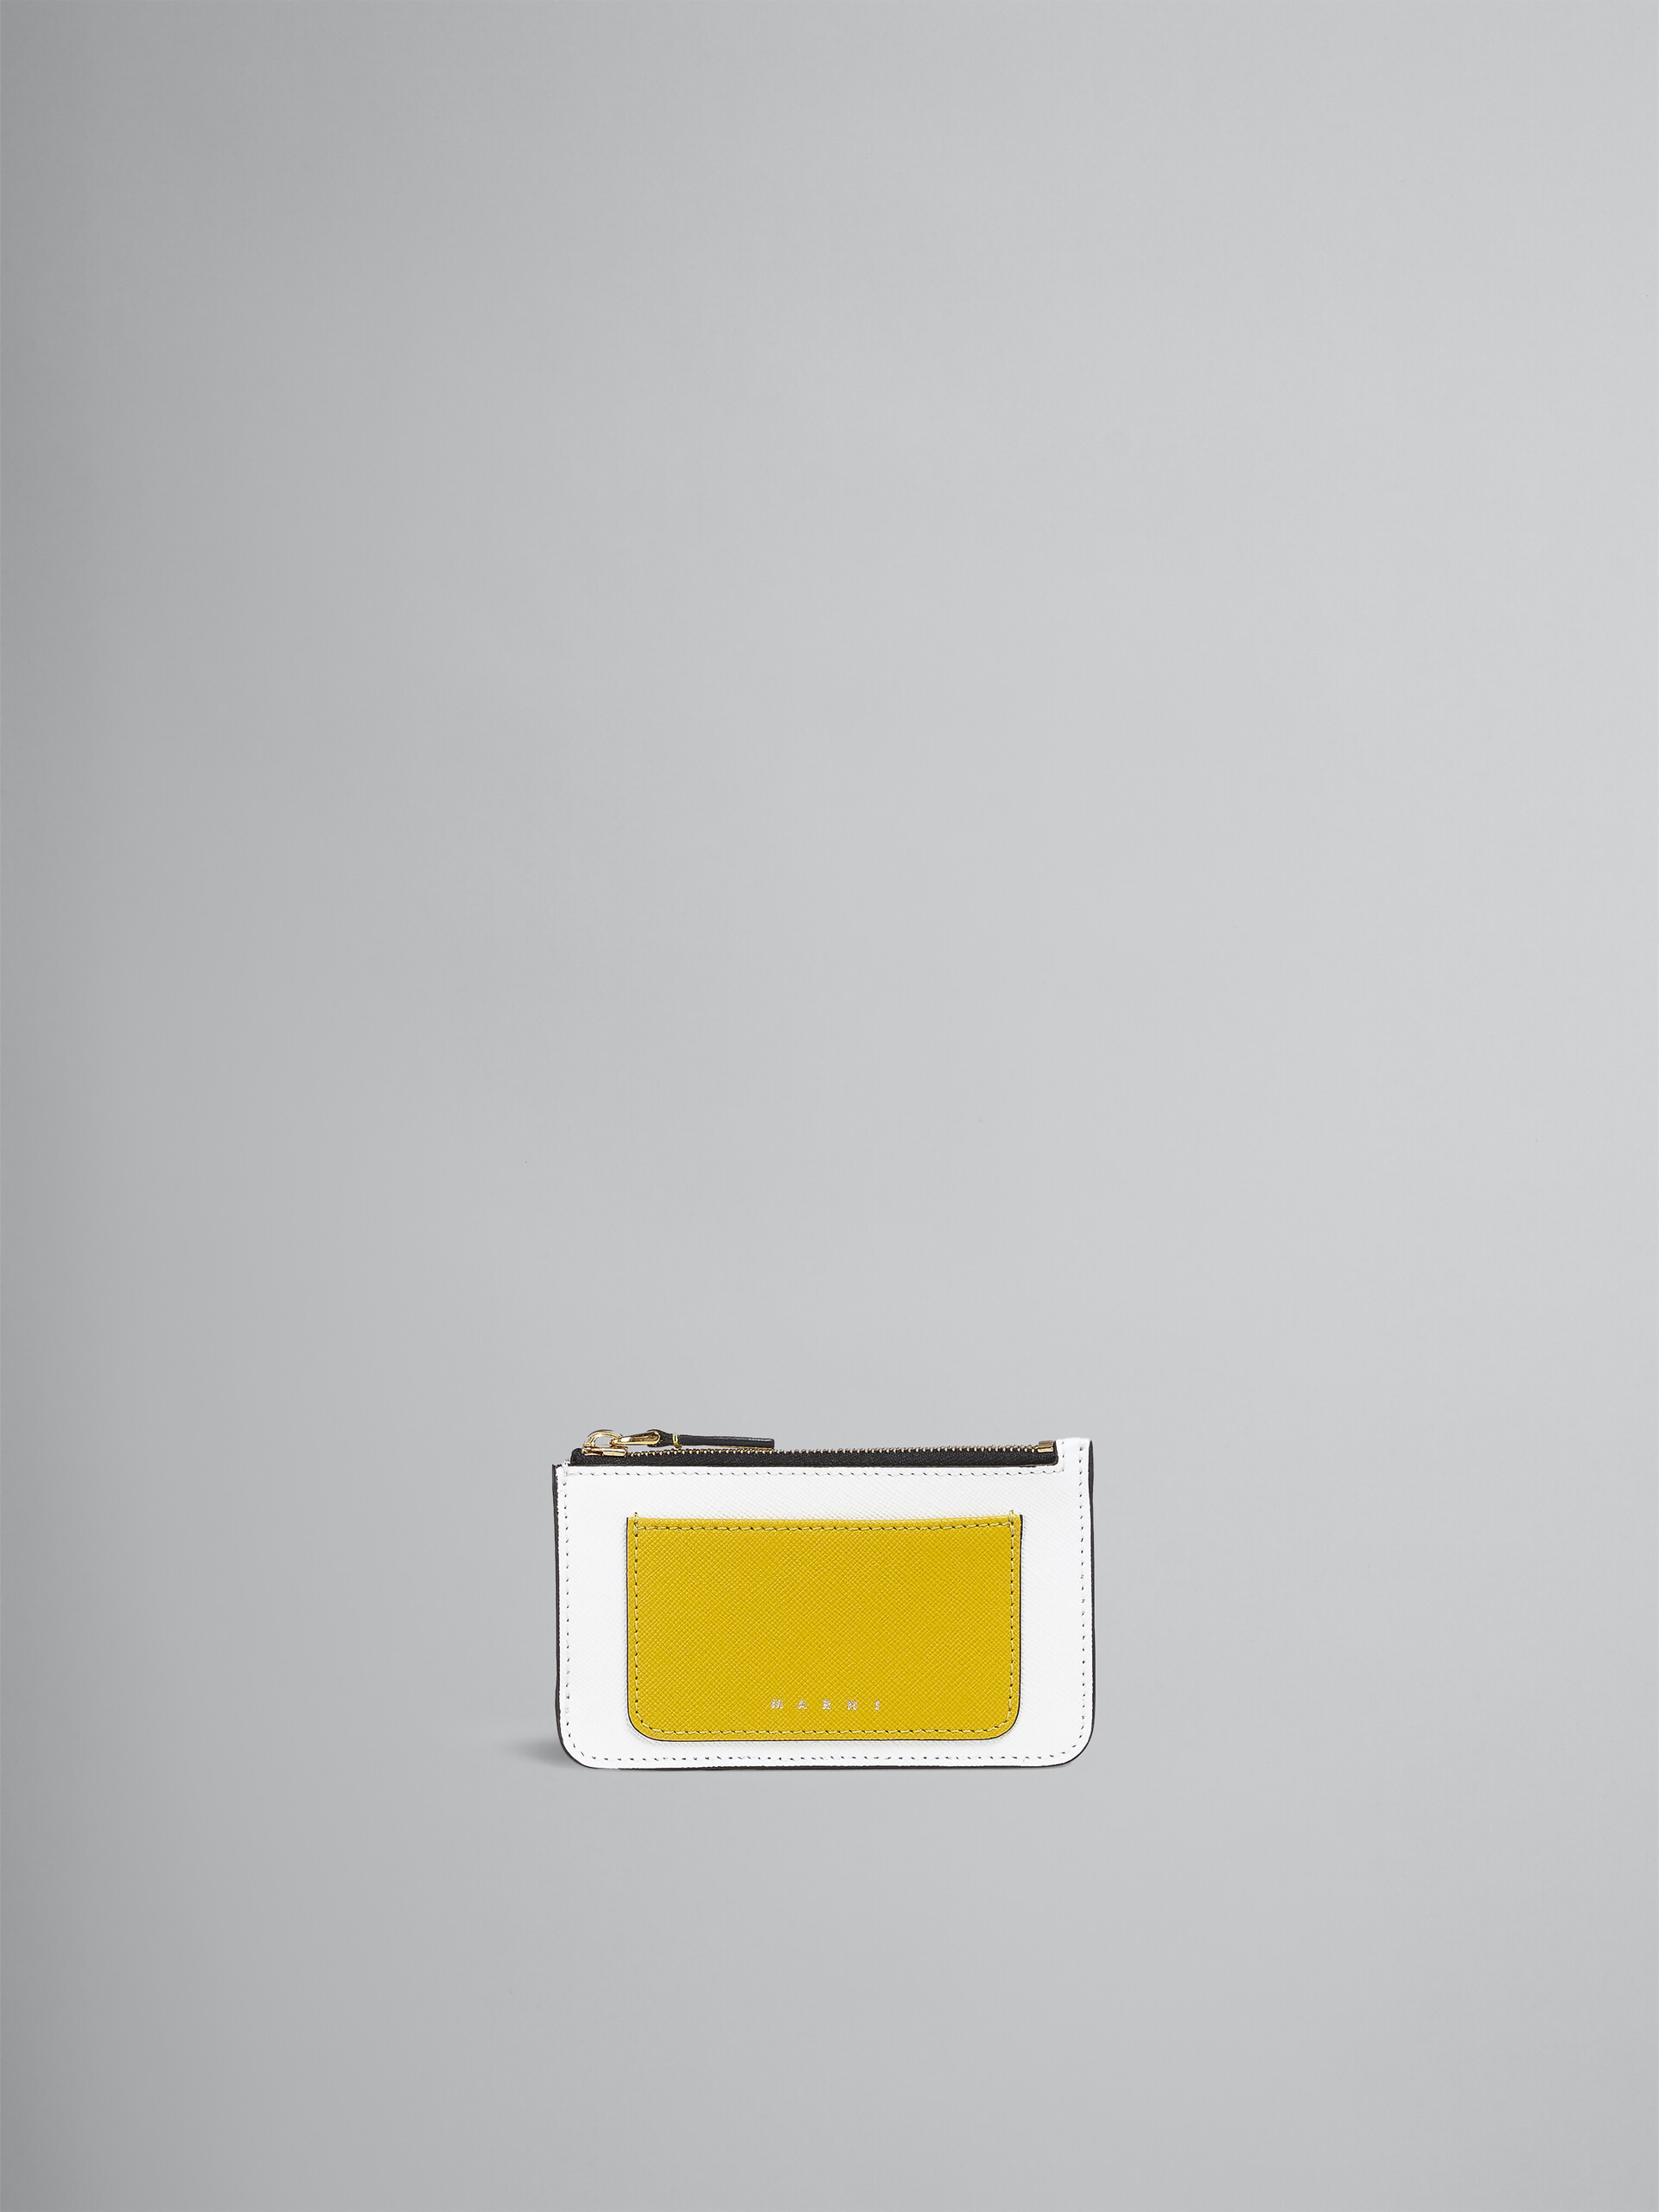 Portacarte in saffiano giallo tono su tono e bianco - Portafogli - Image 1